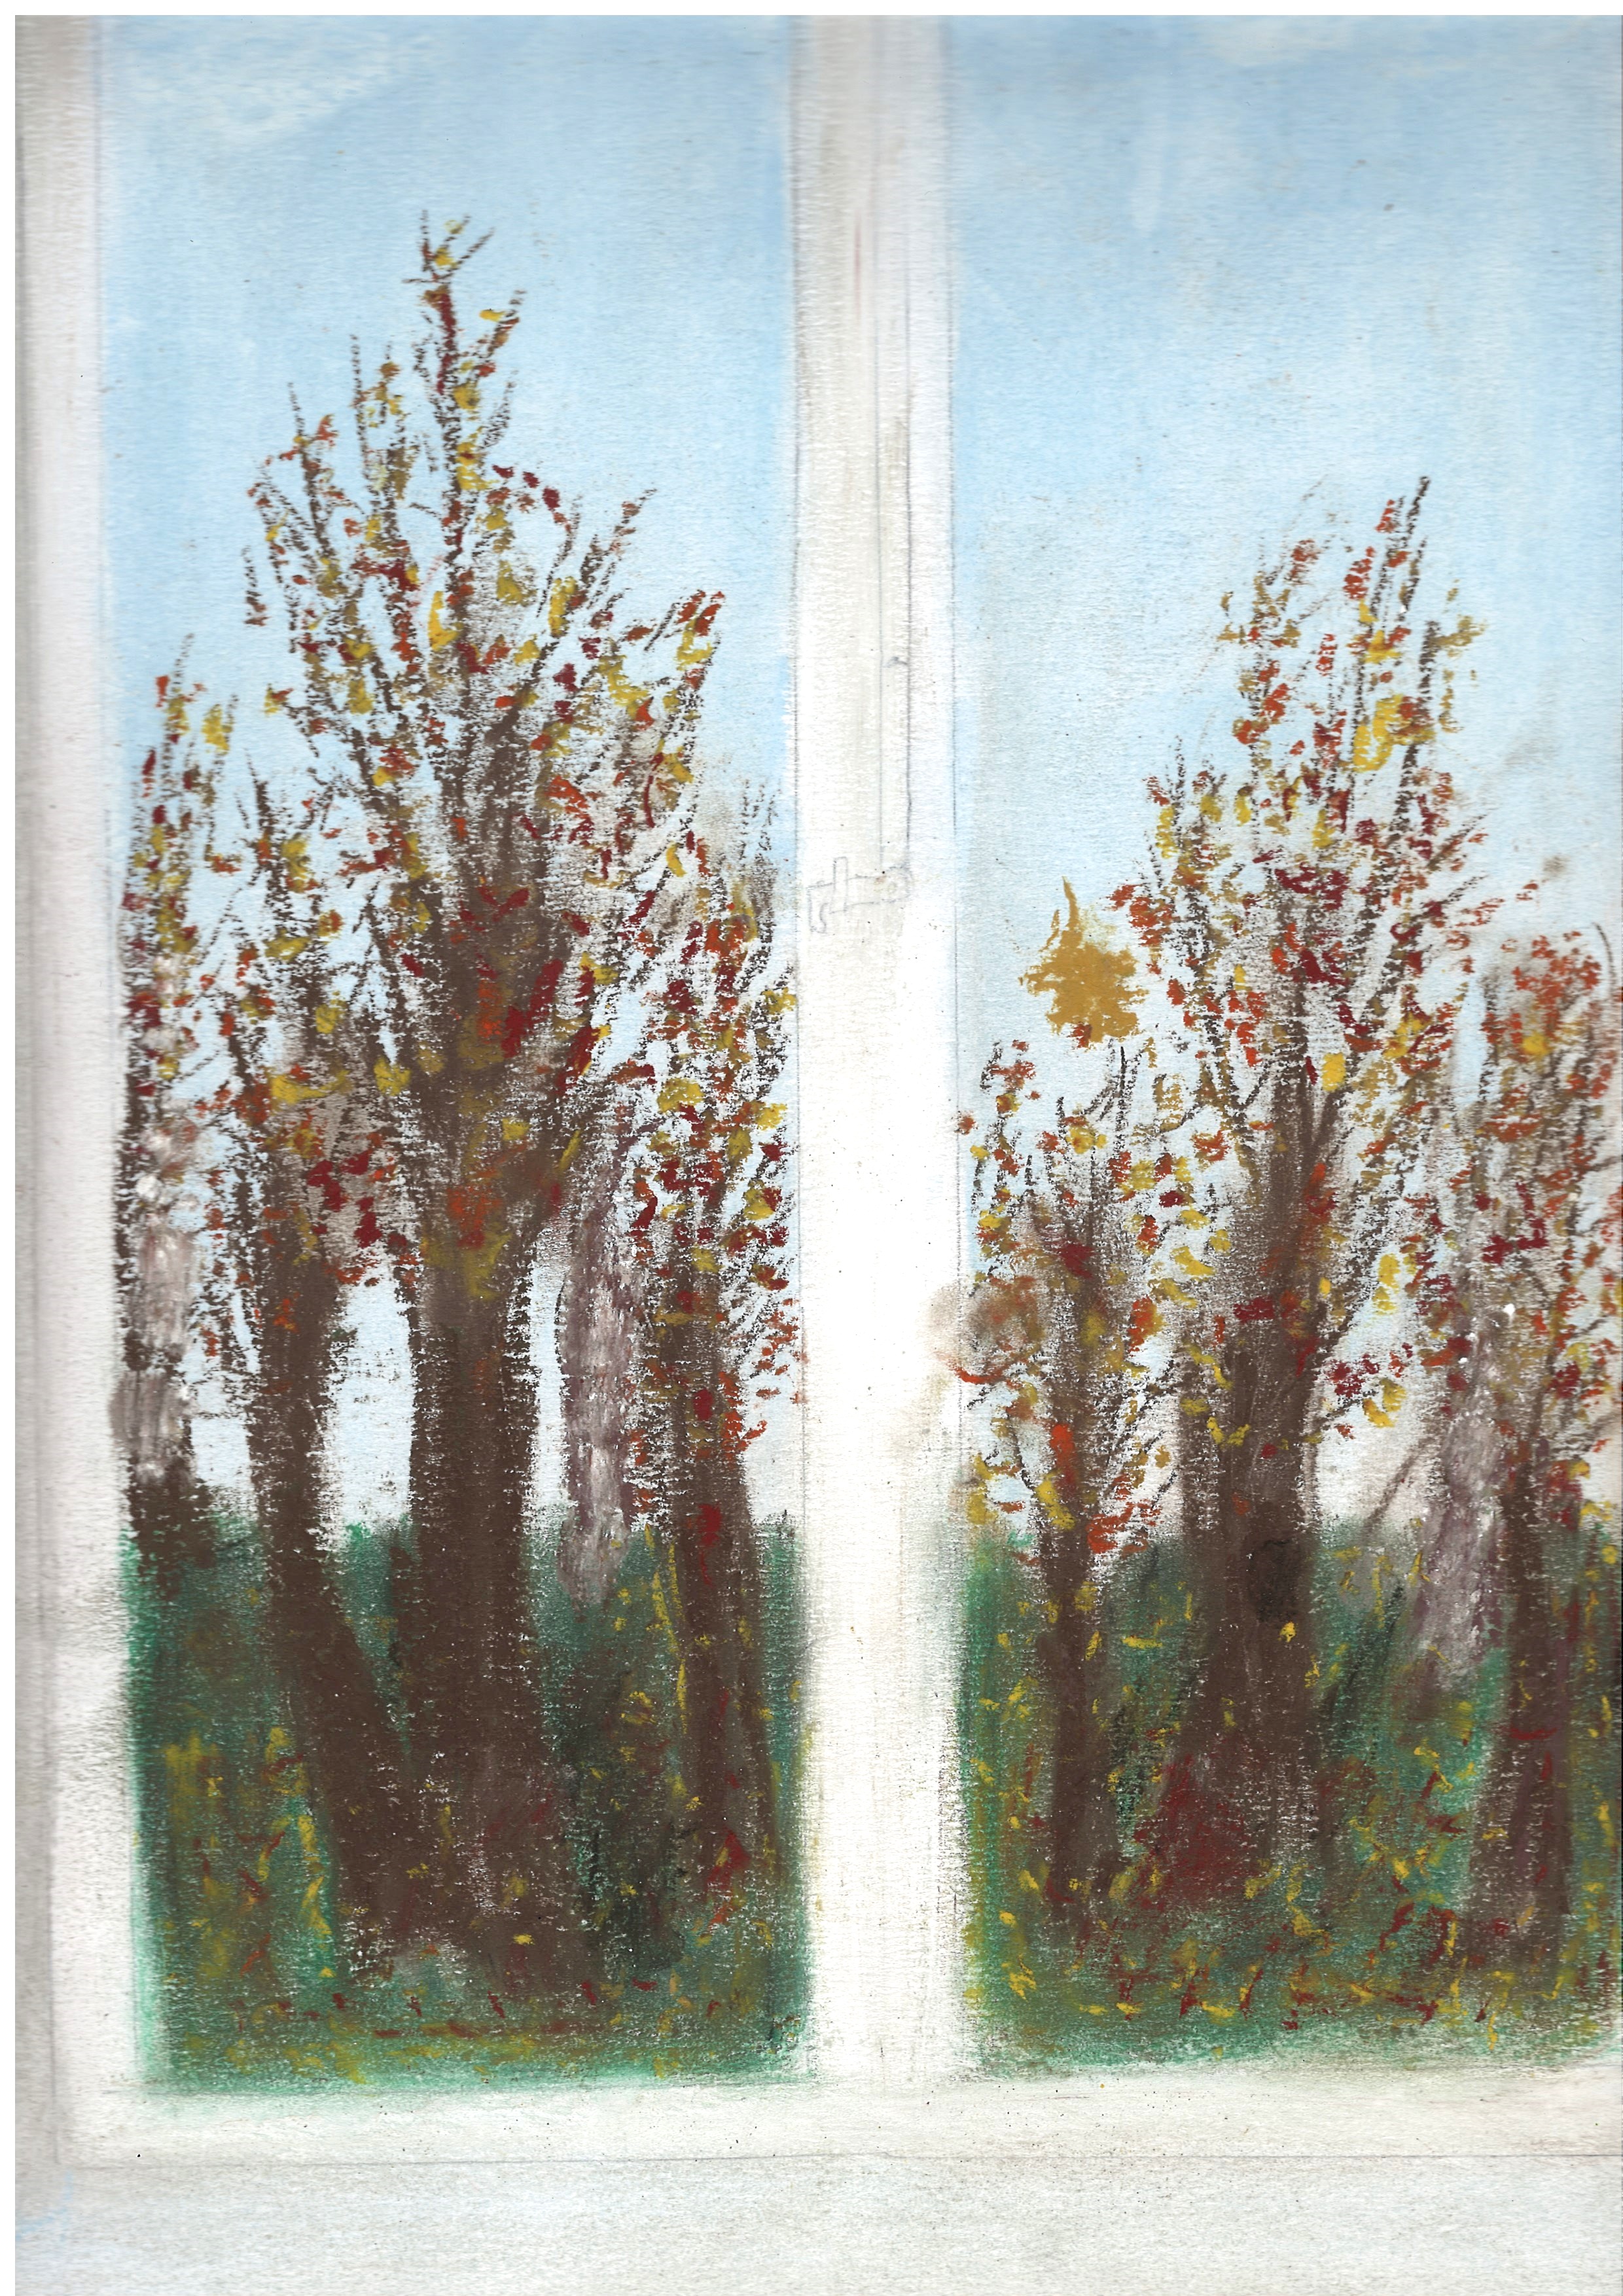 Rysunek wykonany pastelami przedstawiający widok z okna na osiem jesiennych drzew, częściowo pozbawionych liści. Liście pozostałe na drzewach są w odcieniach żółtego, pomarańczowego i czerwonego. 